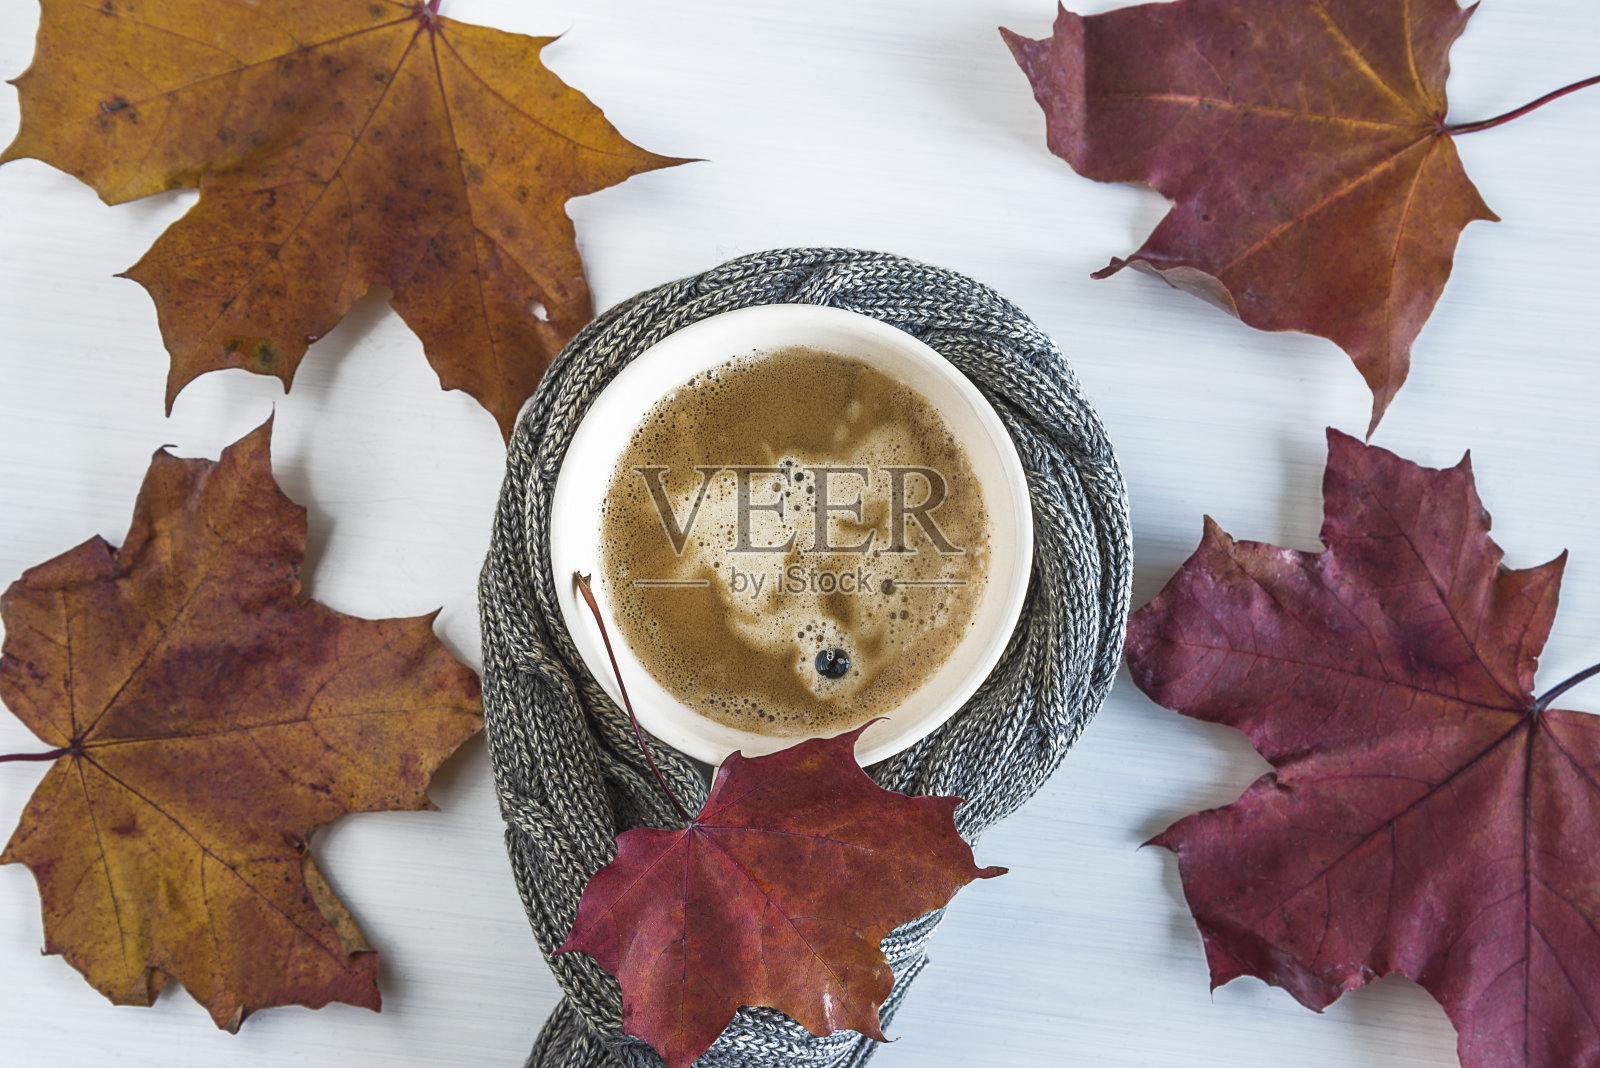 咖啡休息在秋日的概念照片摄影图片